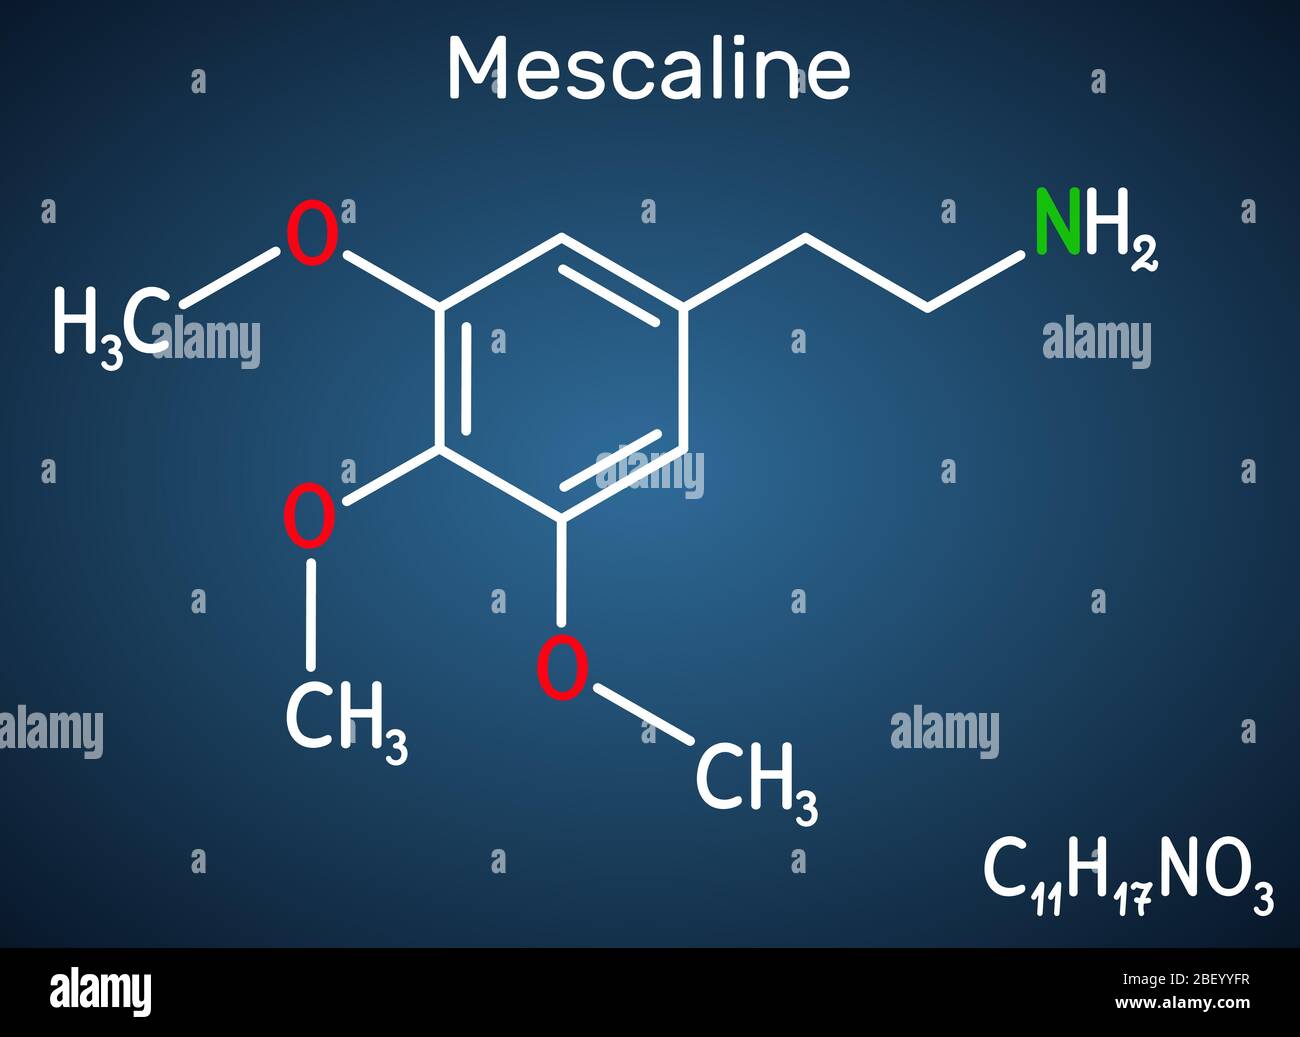 Meskalin-Molekül. Es ist halluzinogen, psychedelisch, Phenethylamin Alkaloid. Strukturelle chemische Formel auf dem dunkelblauen Hintergrund. Vektorillus Stock Vektor